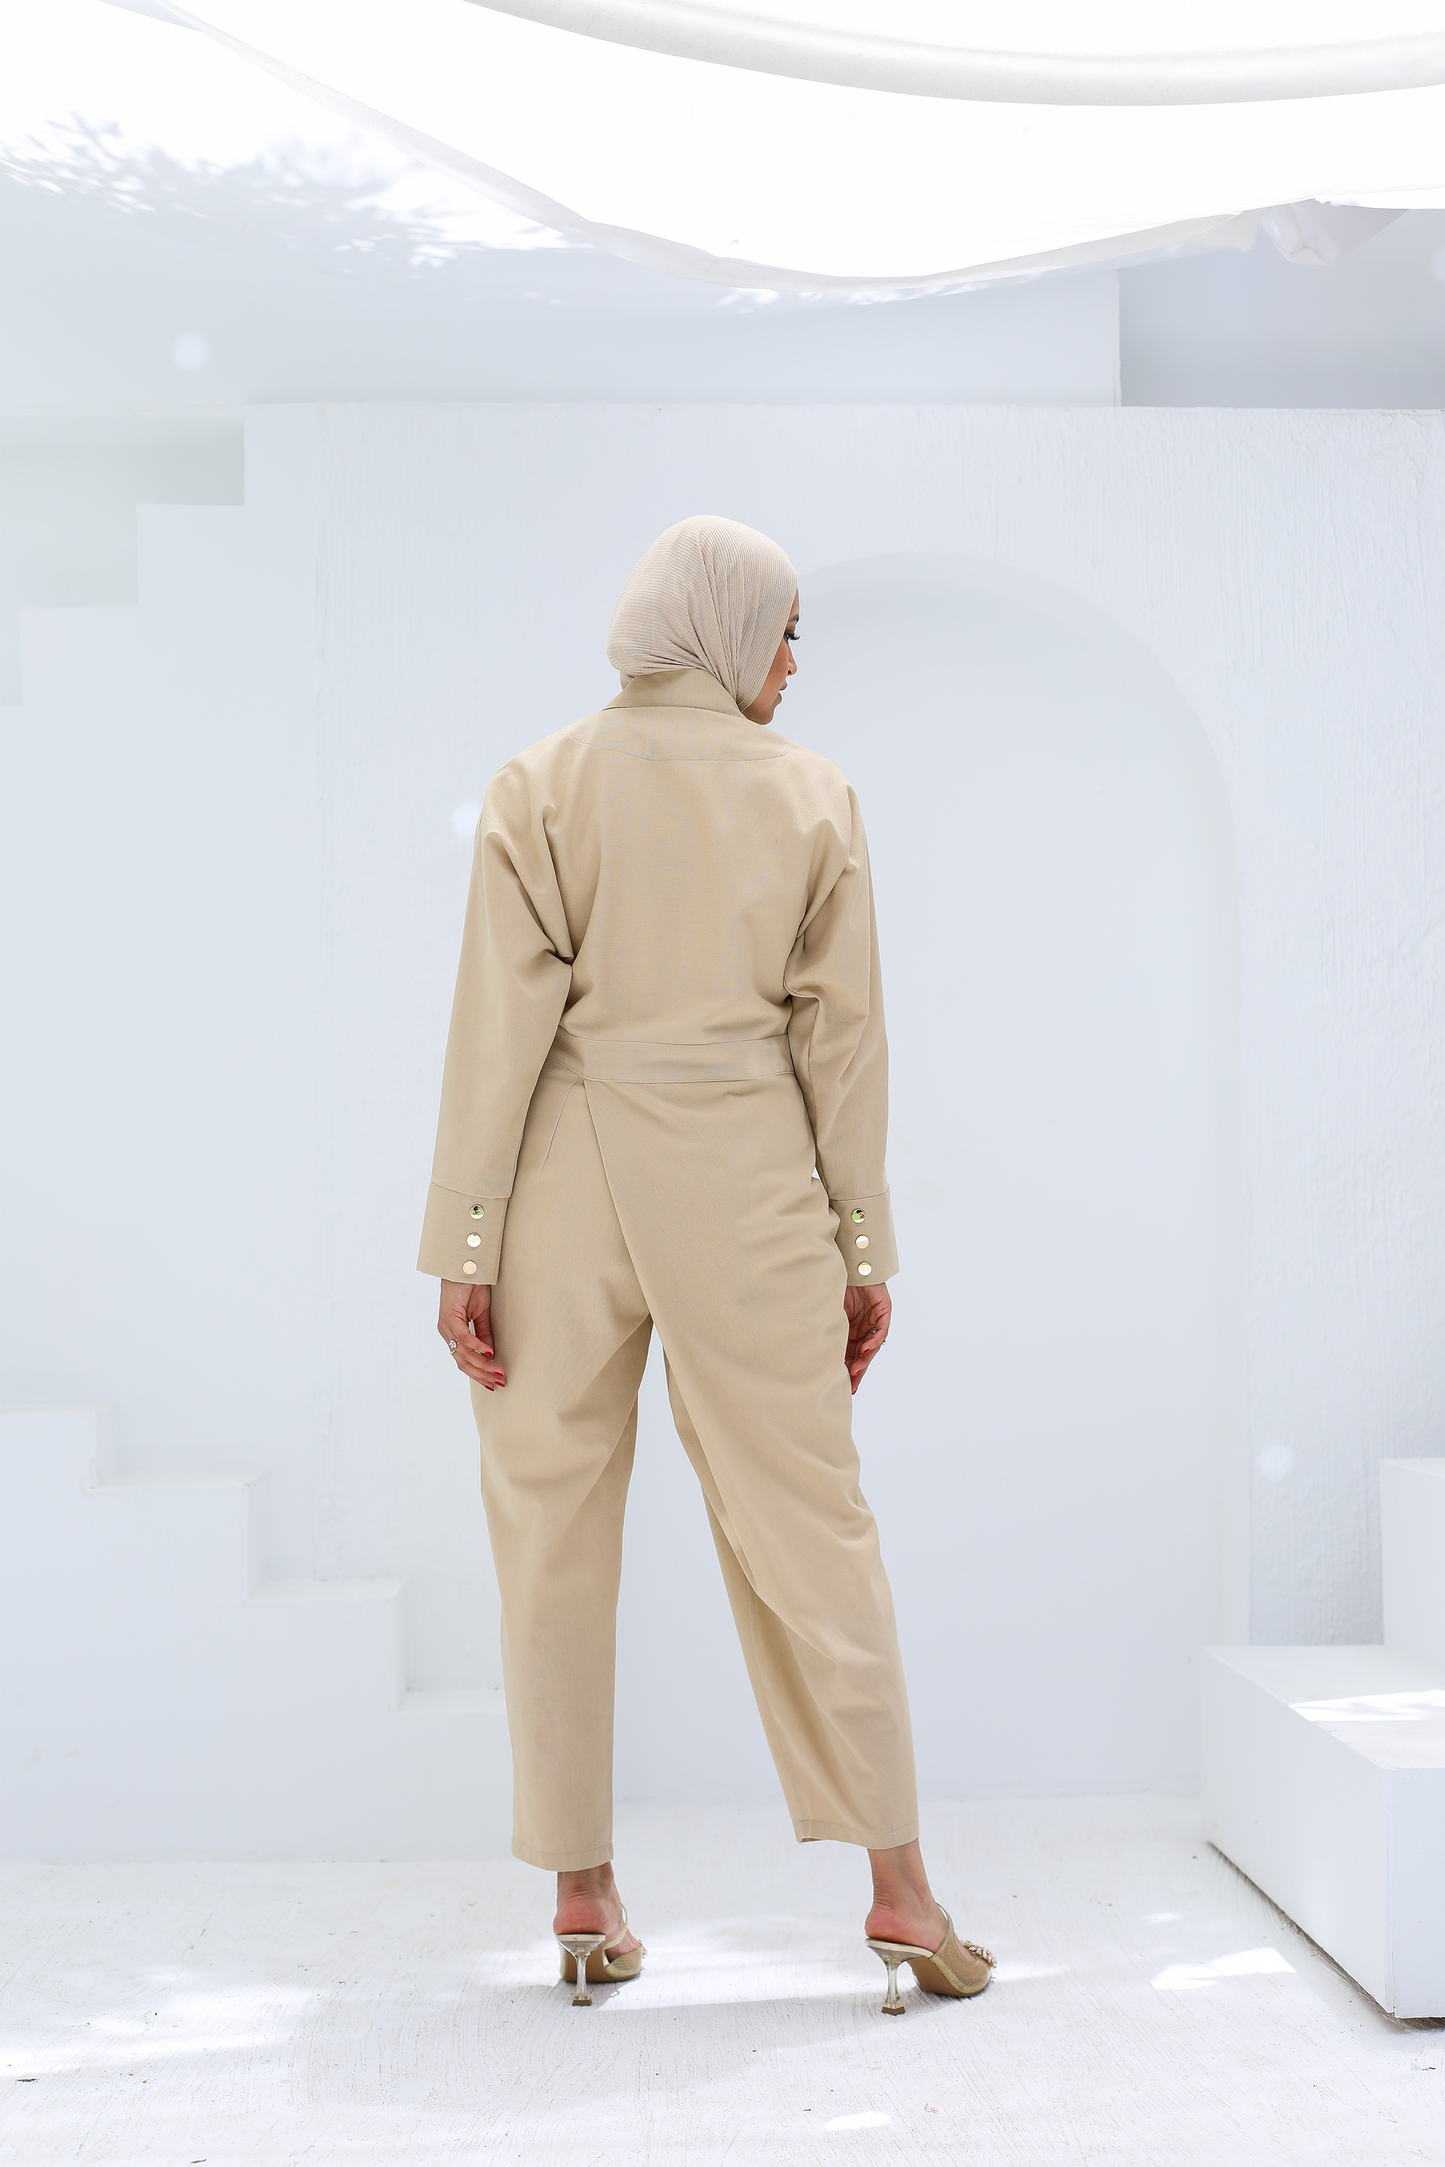 The Asymmetrical Linen Jumpsuit